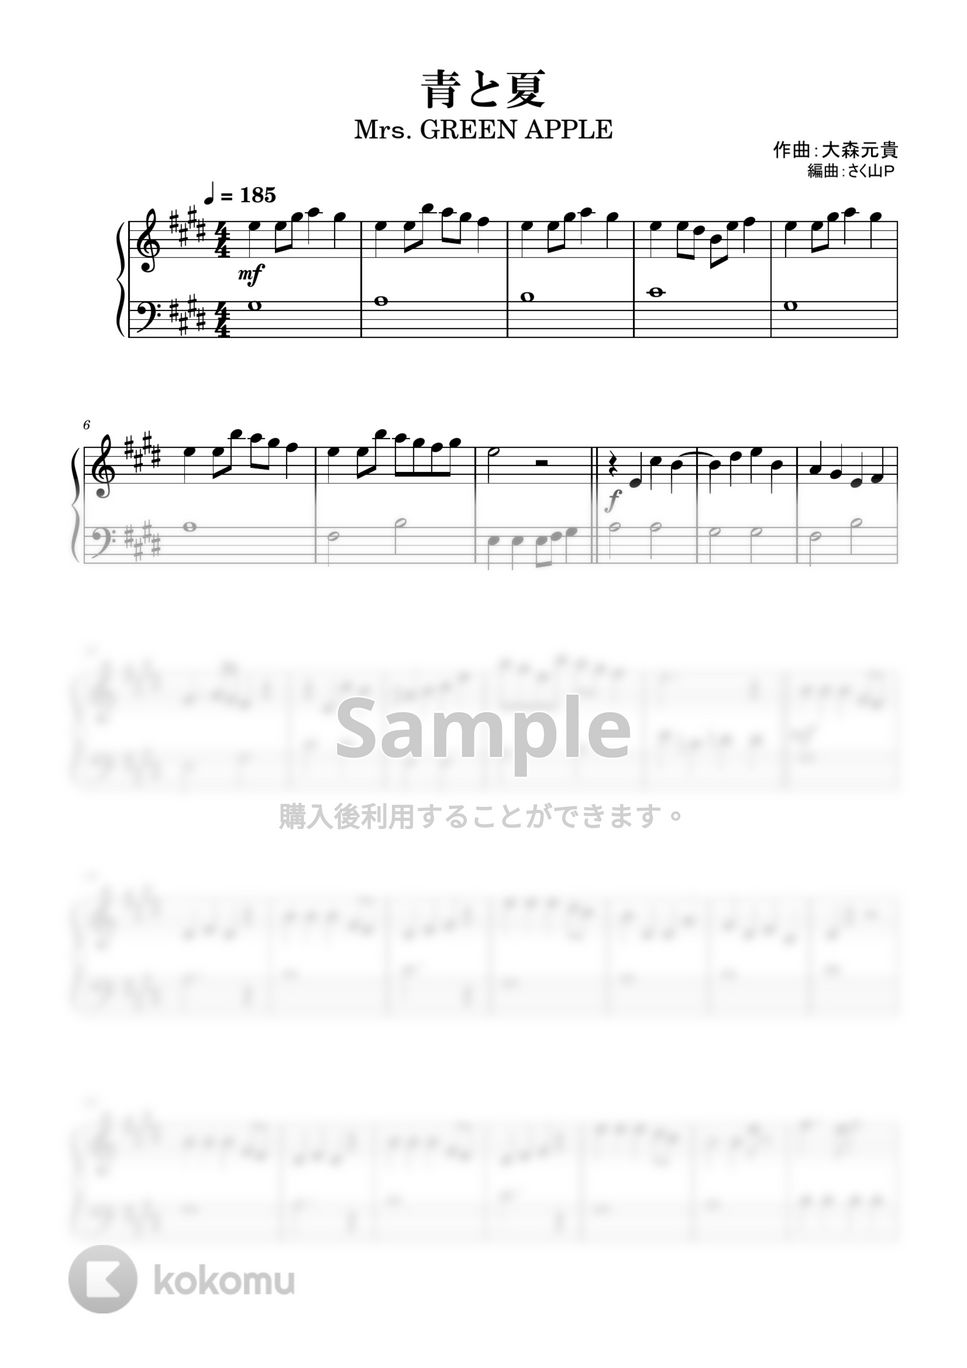 大森元貴 - 青と夏 (簡単ピアノ/初級/Mrｓ.GREEN APPLE) by さく山Ｐ